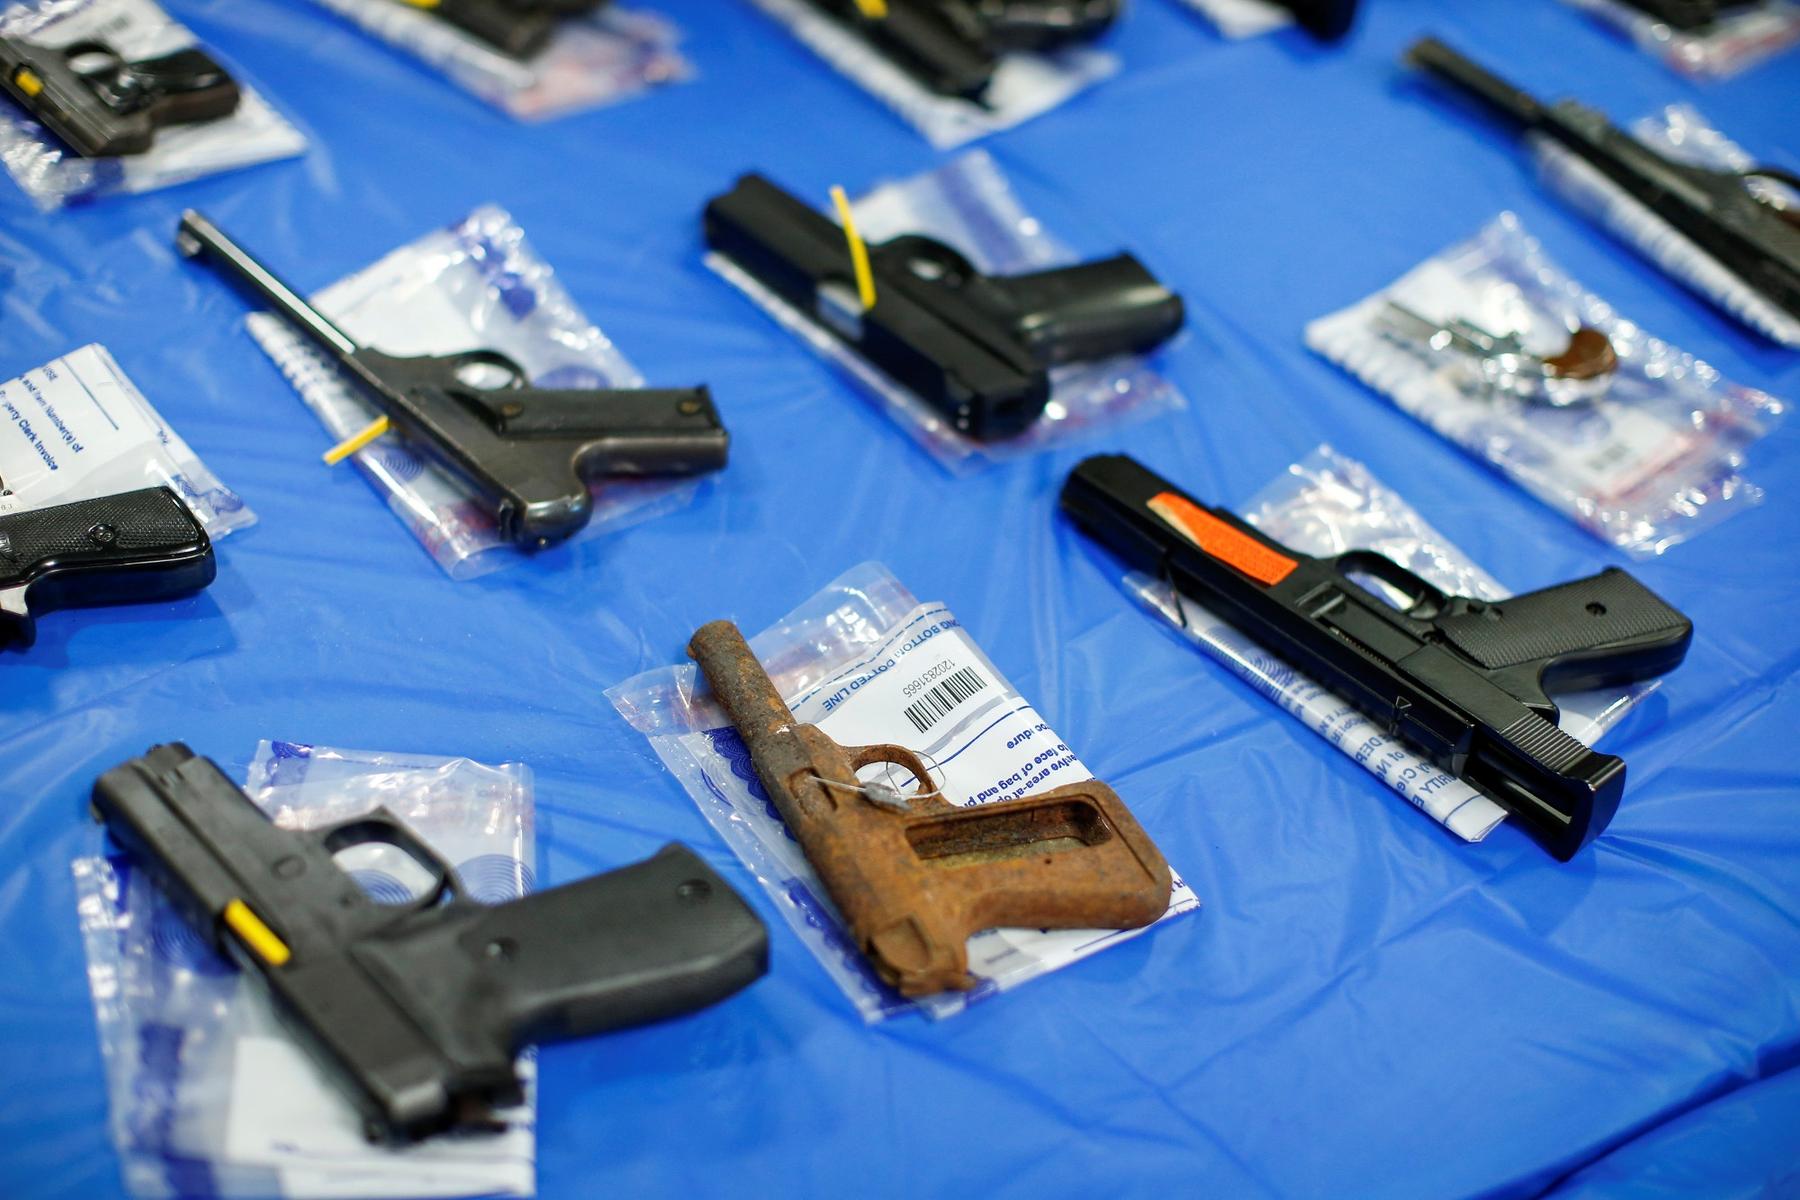 Gun companies report declining demand for firearms